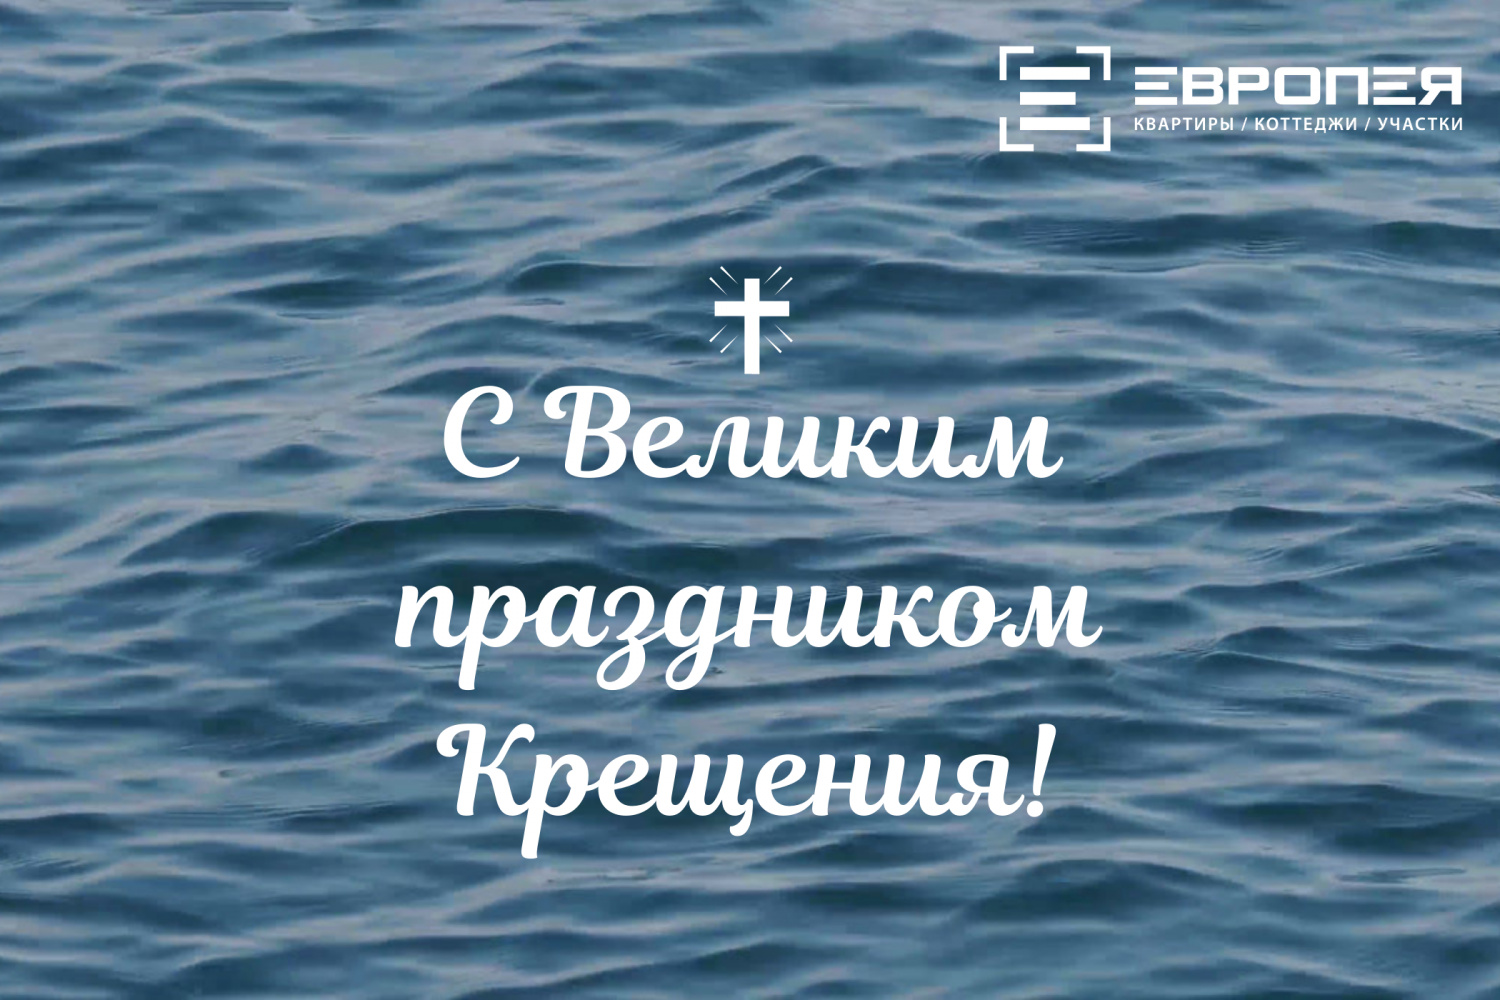 Поздравляем вас с праздником Крещения Господня, который отмечается Православной Церковью 19 января.